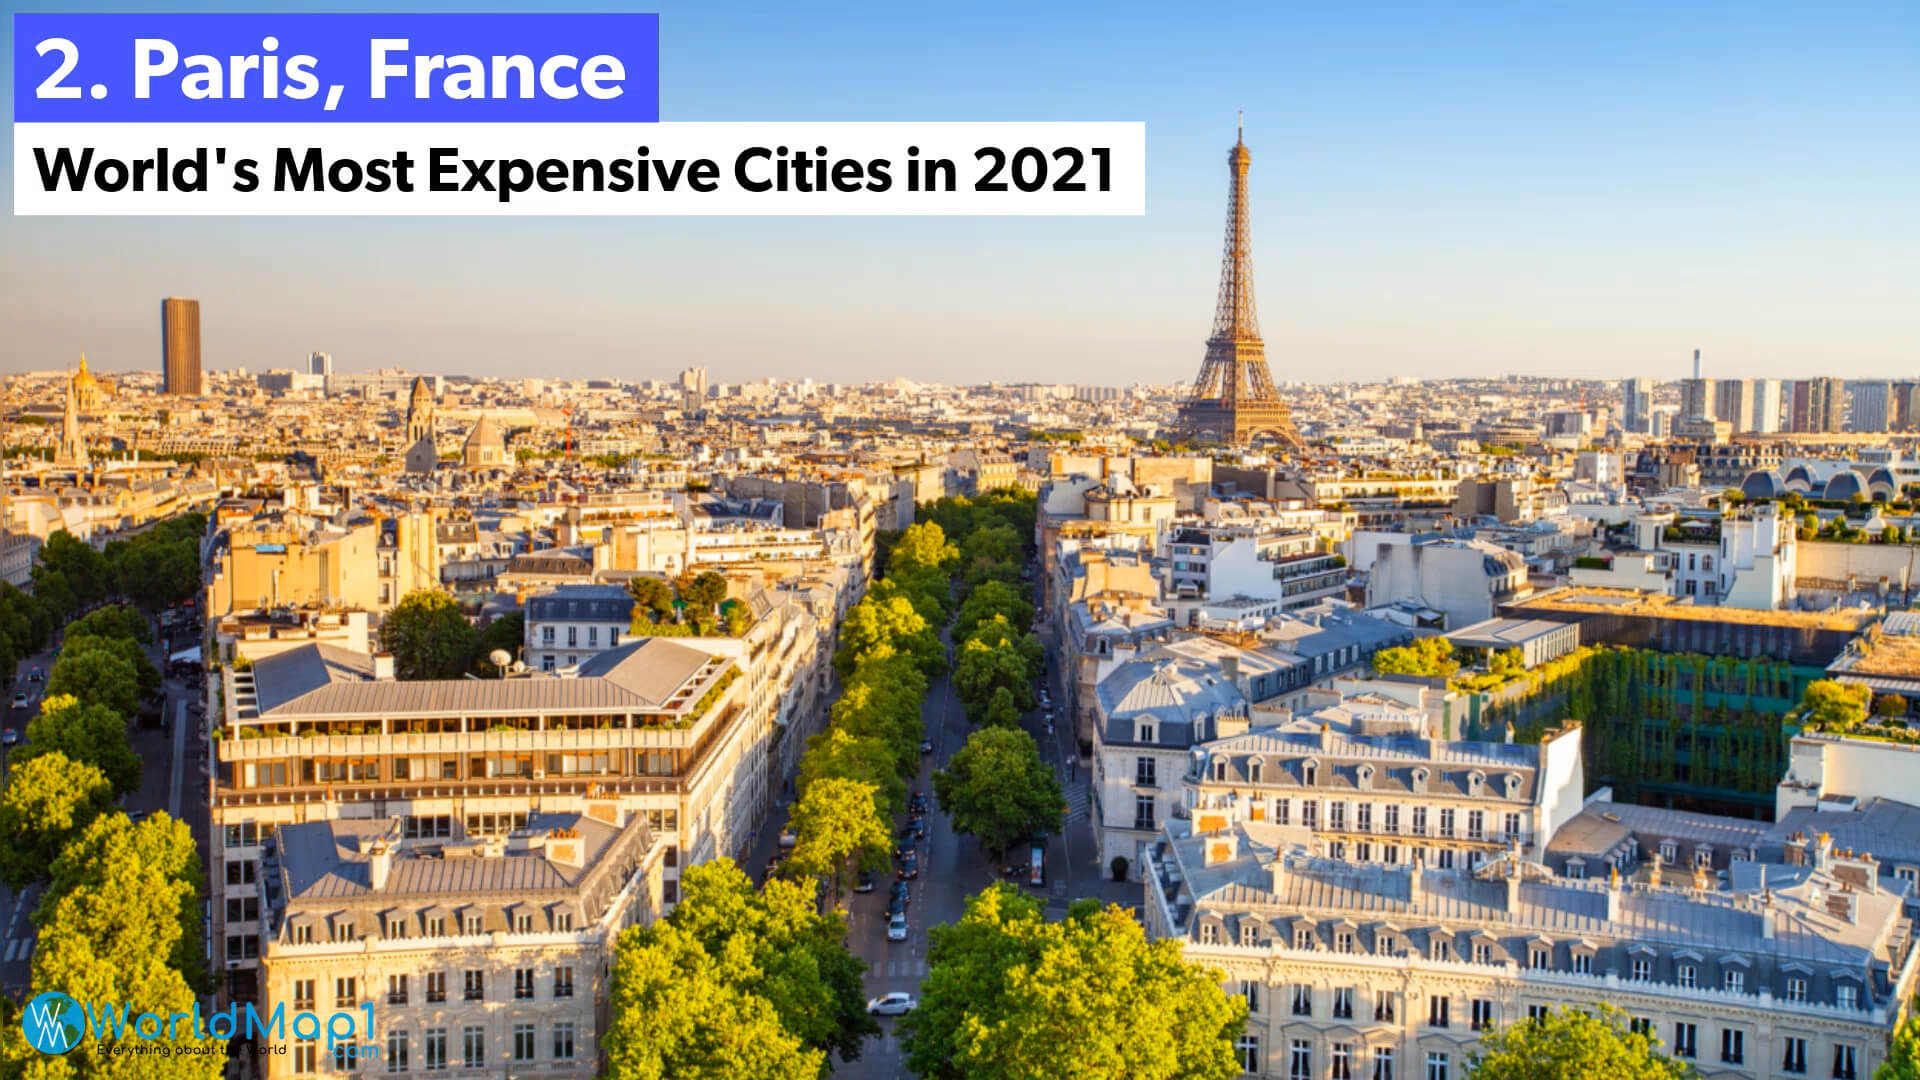 Les villes les plus chères du monde - Paris, France